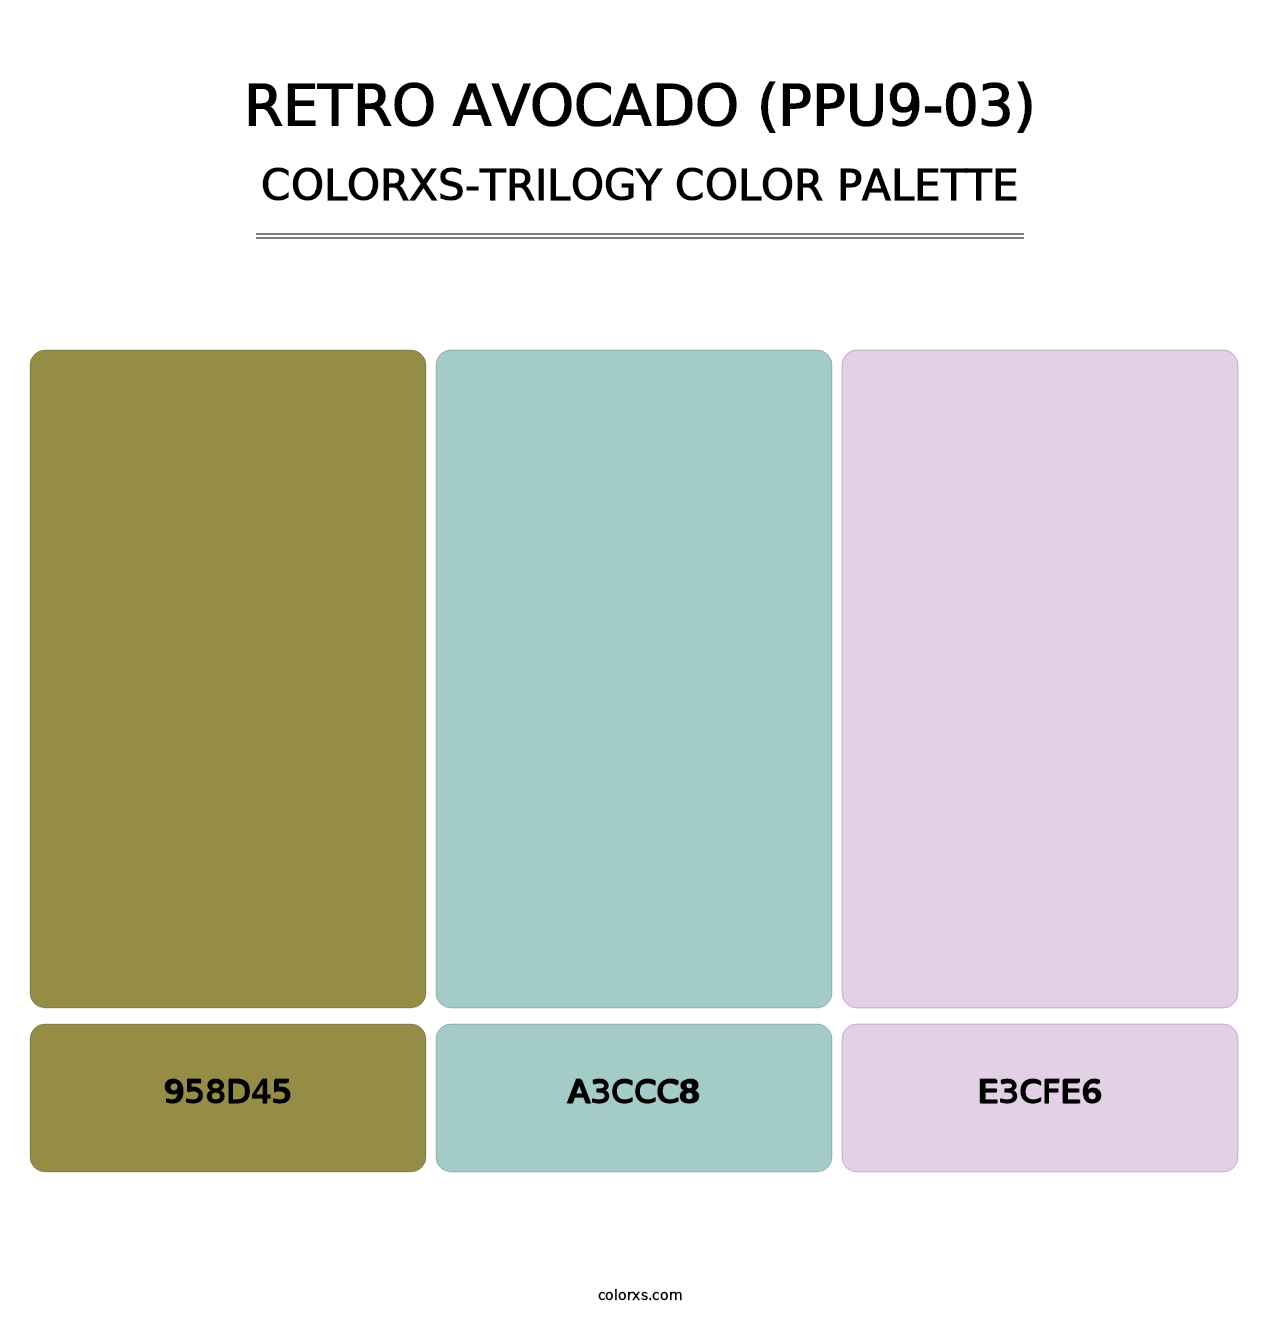 Retro Avocado (PPU9-03) - Colorxs Trilogy Palette